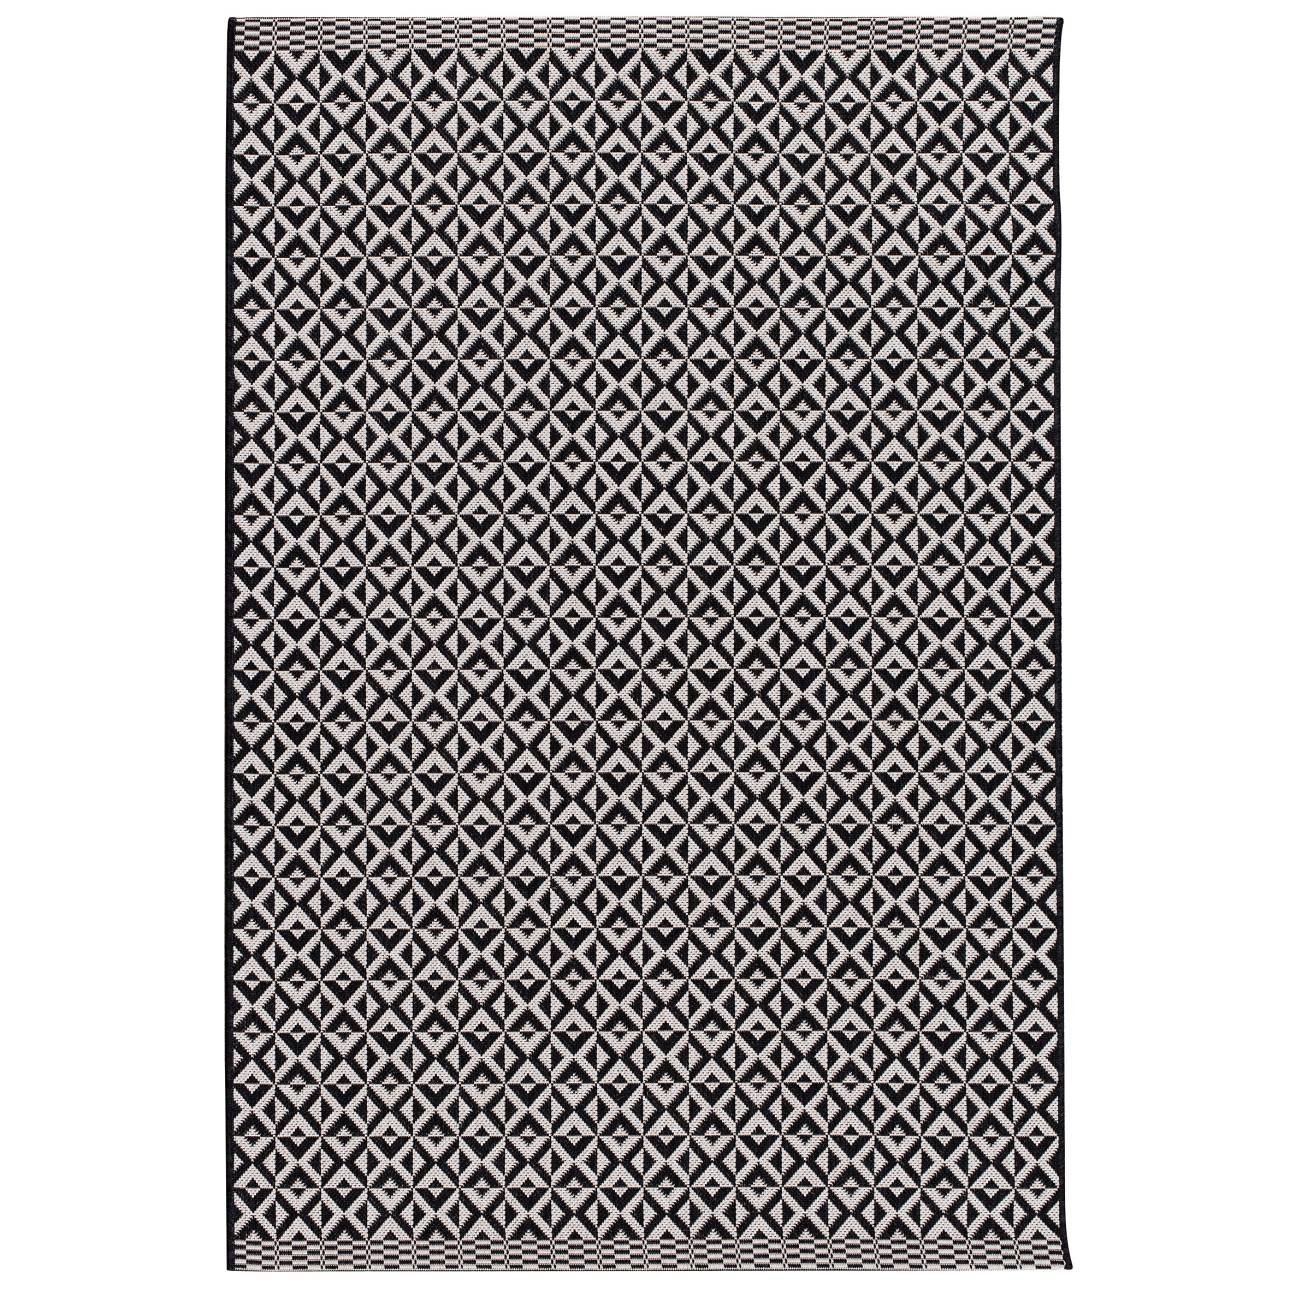 Dekoria Koberec Modern Geometric black/wool, 120x170cm, 120 x 170 cm